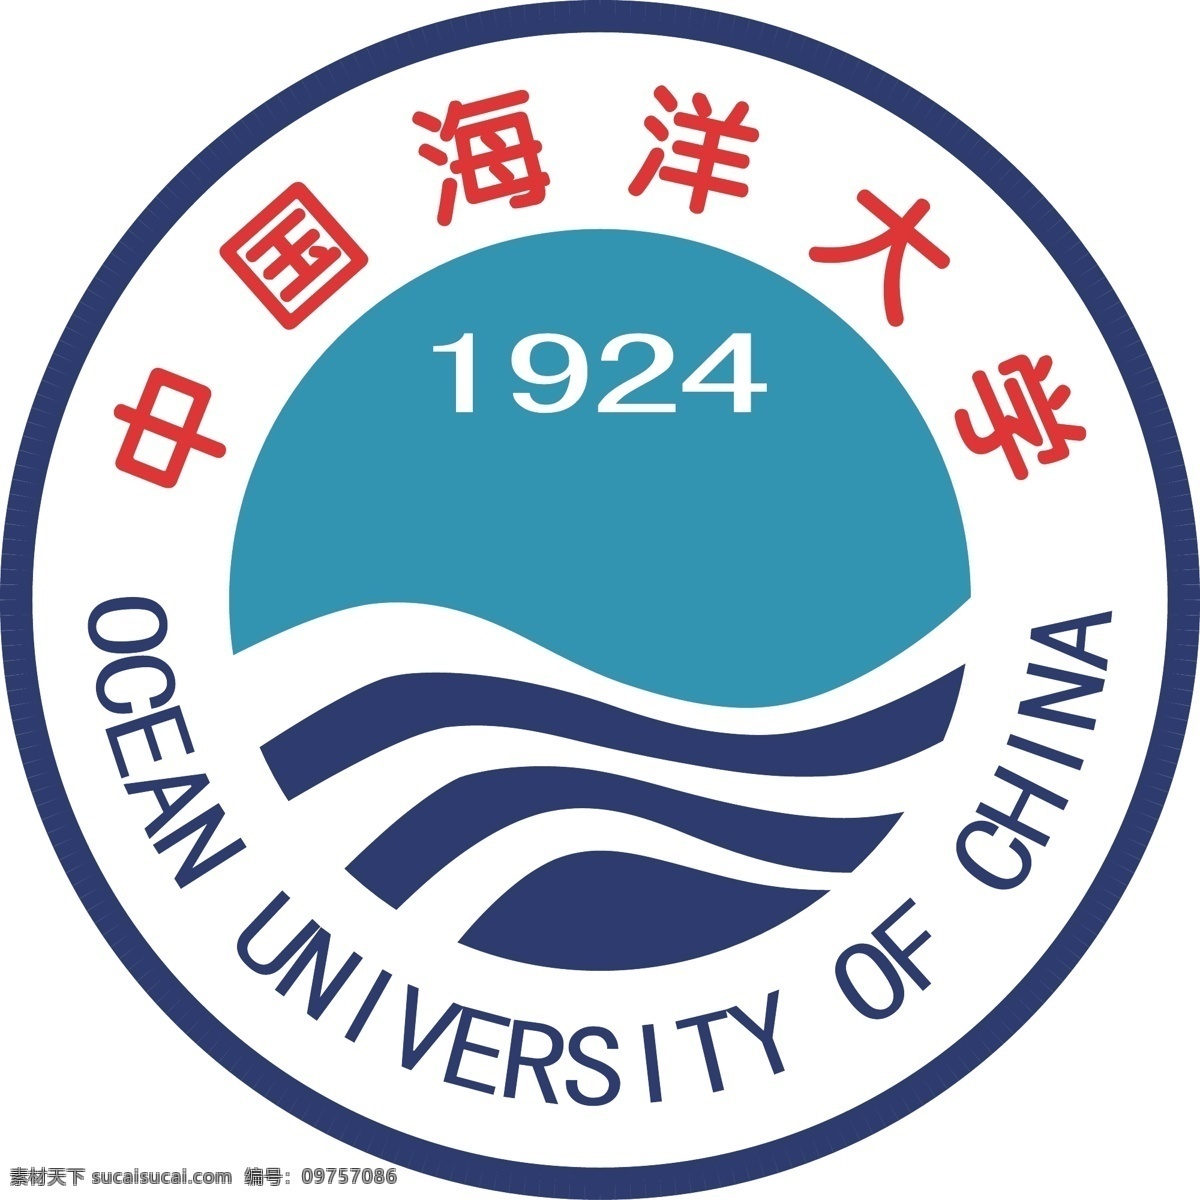 中国海洋大学 海洋 大学 logo 大学logo 海洋大学 dx 标志图标 其他图标